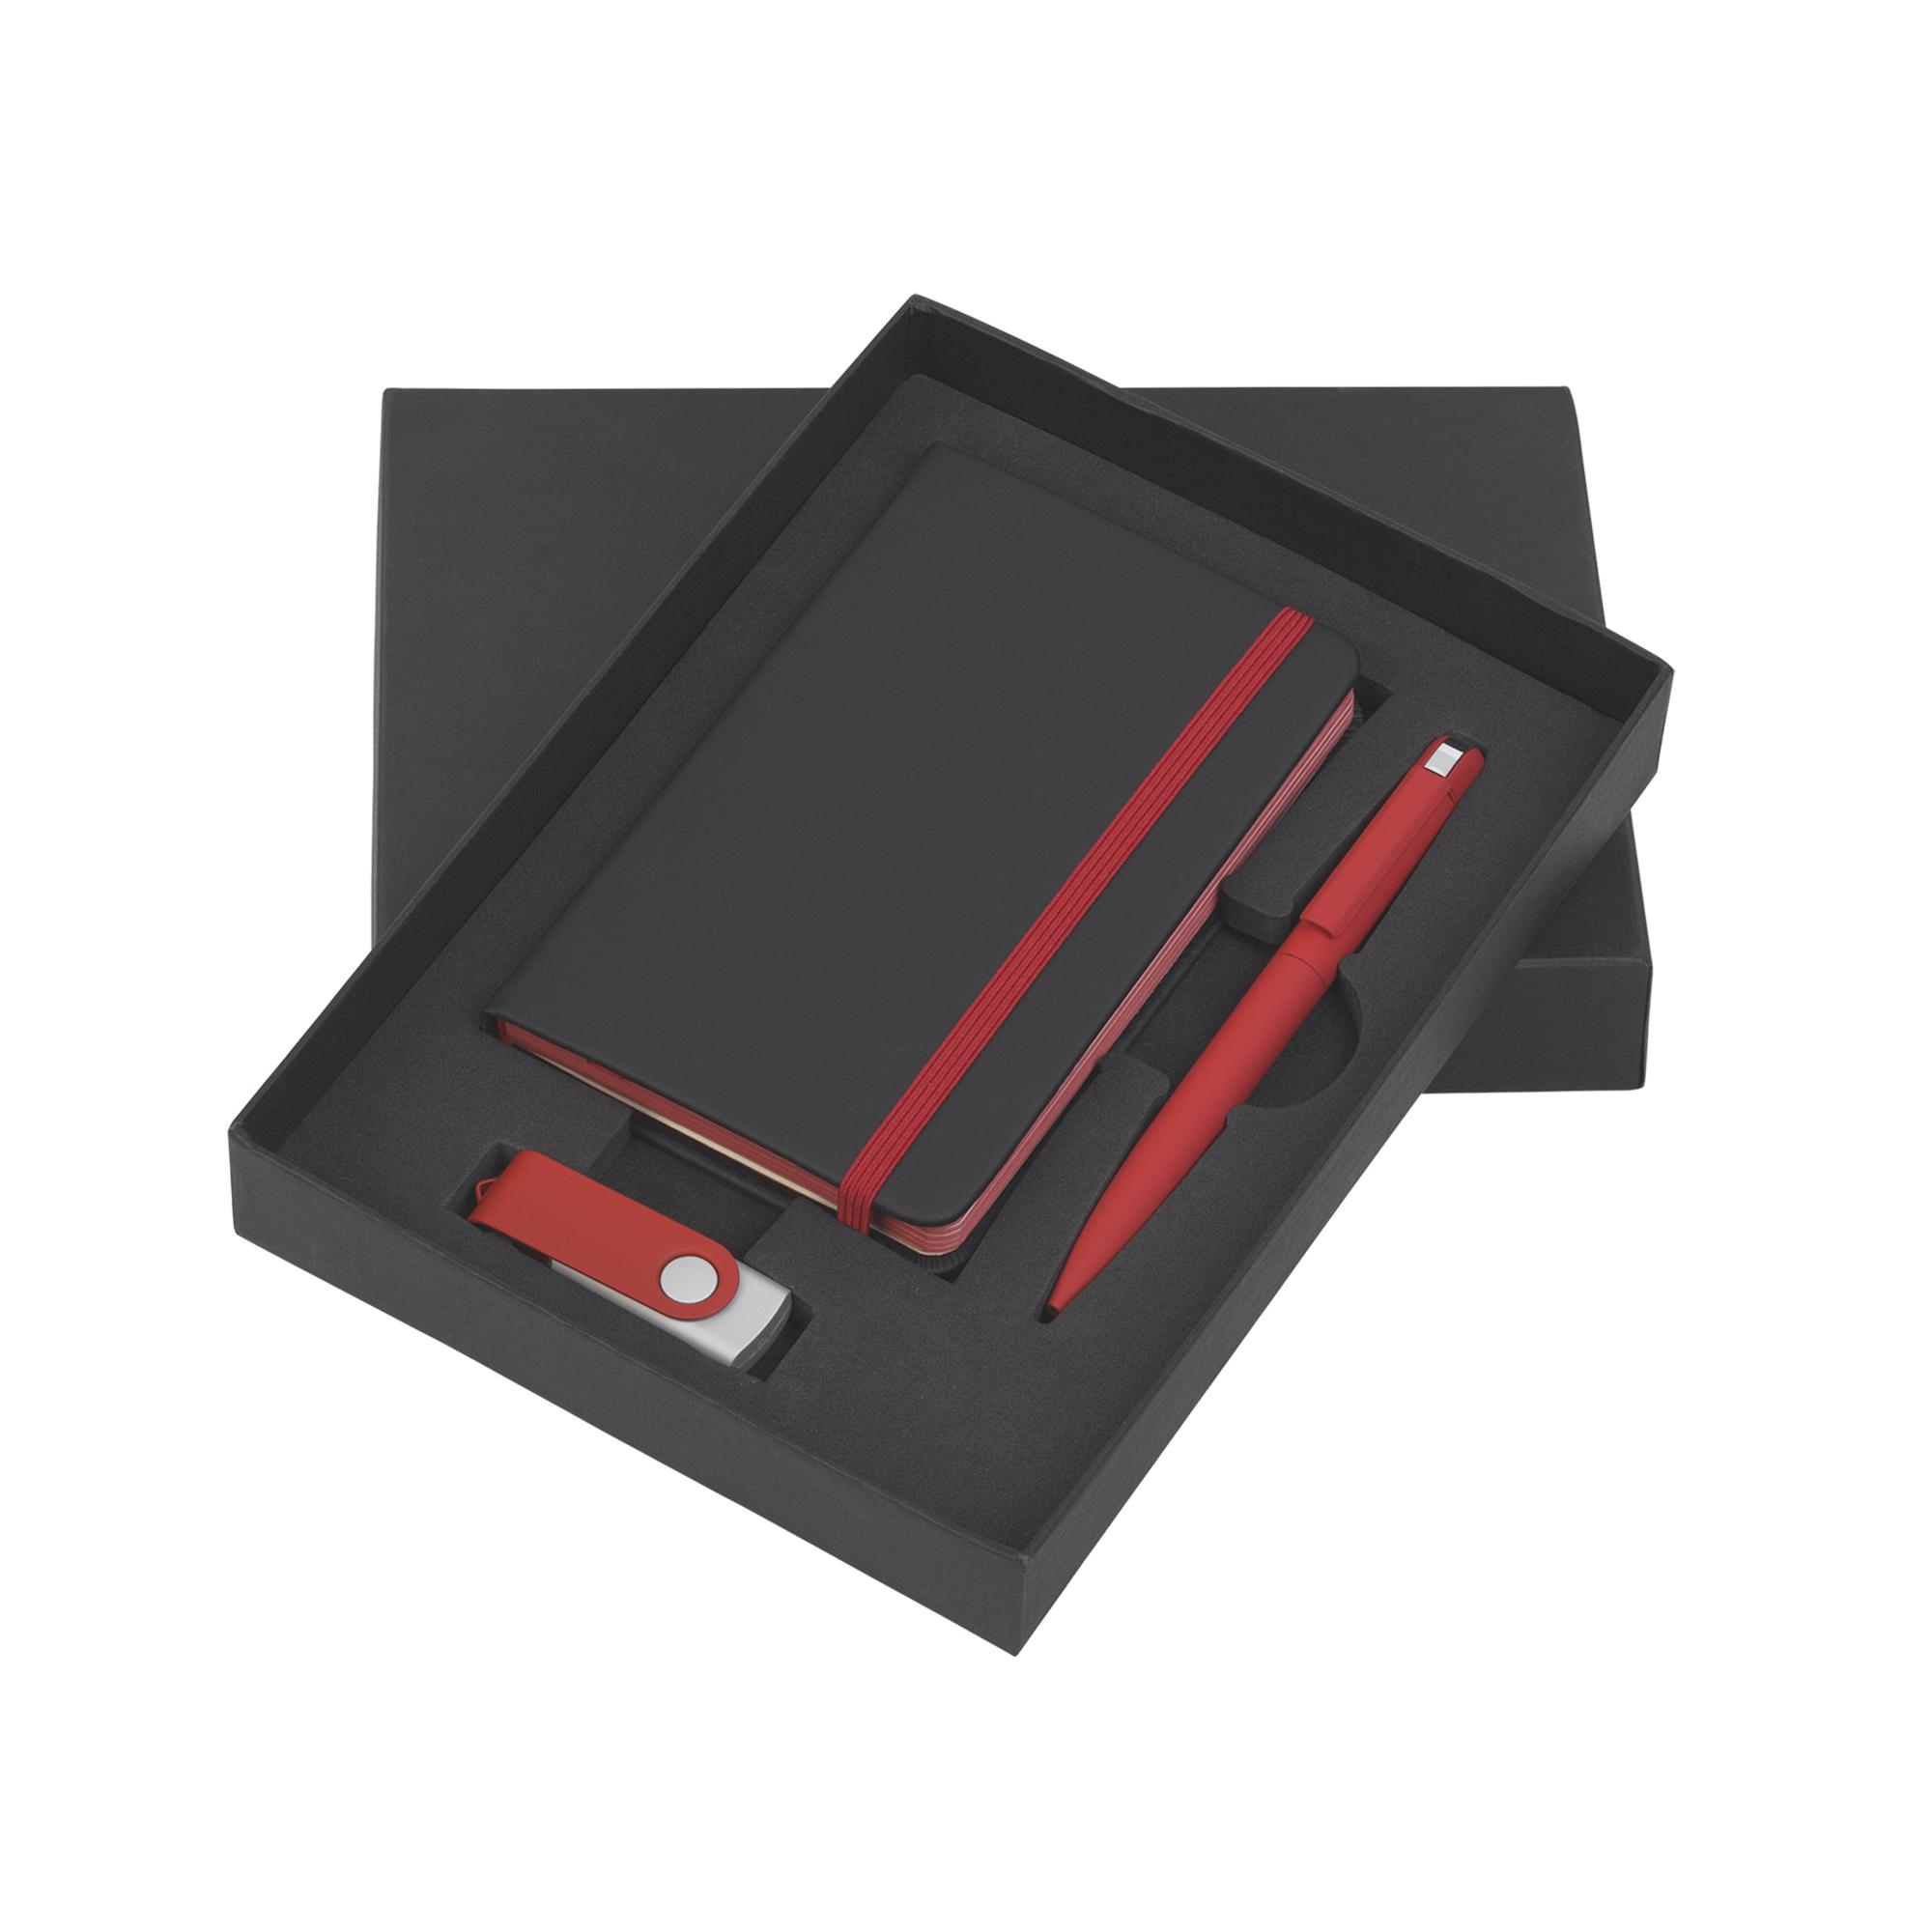 Подарочный набор "Пьемонт", покрытие soft touch, цвет черный с красным, фото 2